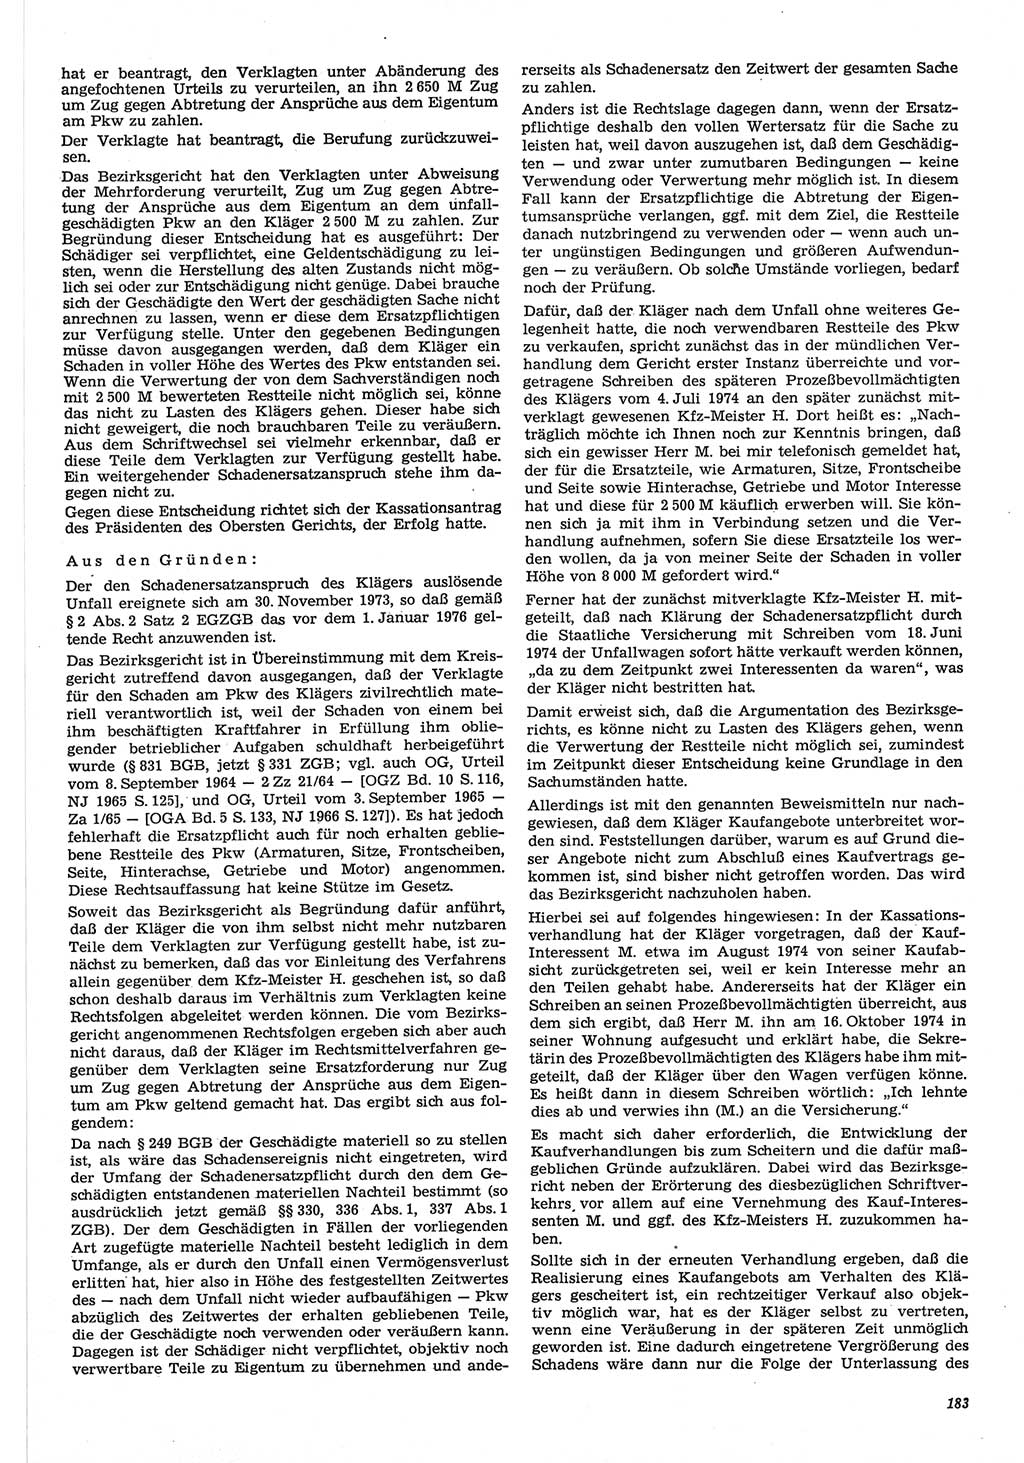 Neue Justiz (NJ), Zeitschrift für Recht und Rechtswissenschaft-Zeitschrift, sozialistisches Recht und Gesetzlichkeit, 31. Jahrgang 1977, Seite 183 (NJ DDR 1977, S. 183)